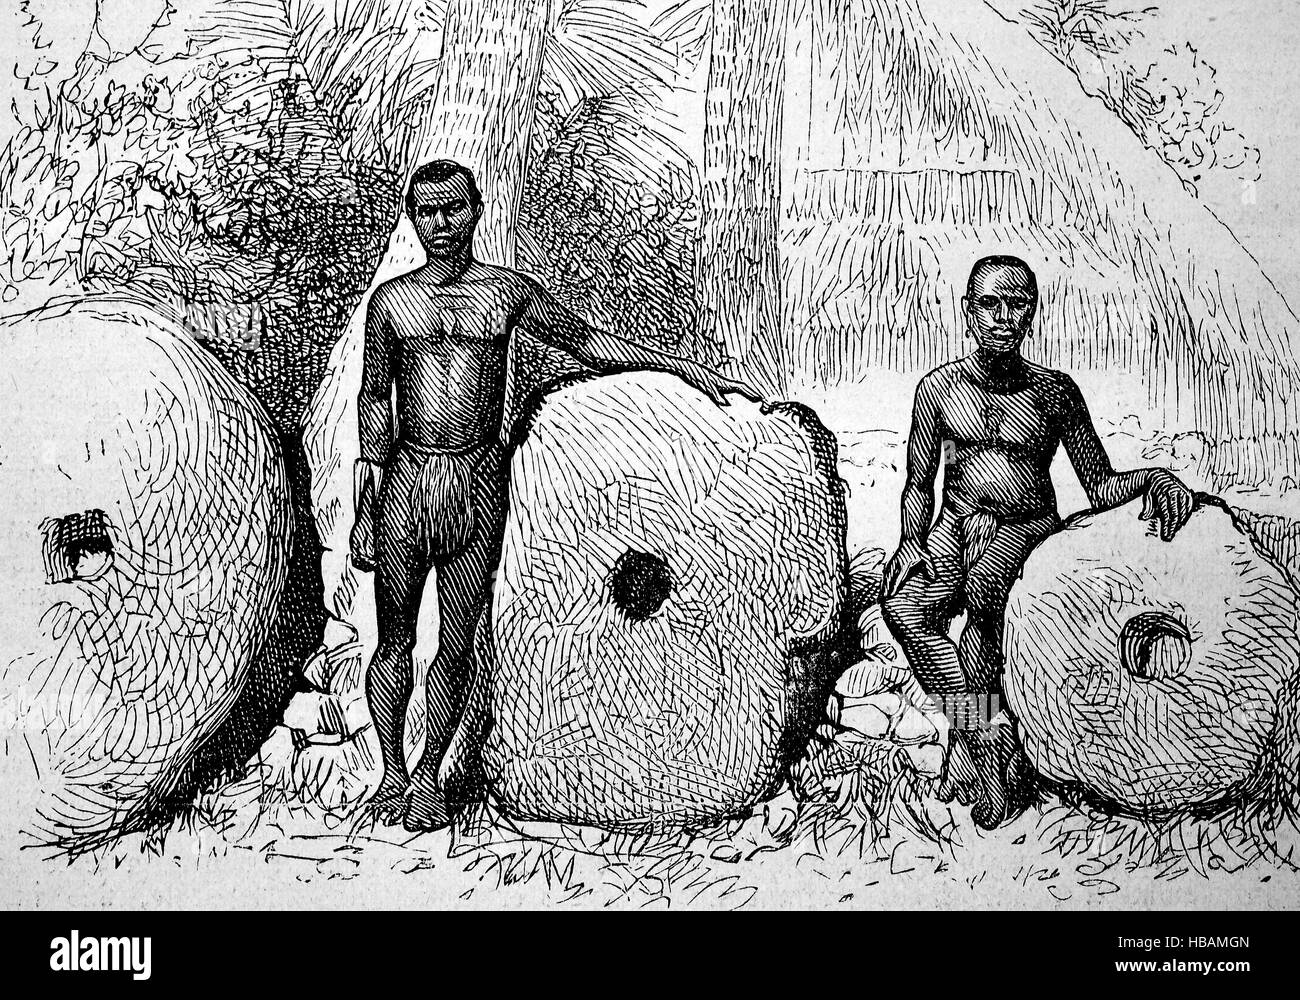 Rai, ou de pierre circulaire argent disques en pierre sculptée dans du calcaire, extraite sur plusieurs des îles micronésiennes, hictorical illustration de 1880 Banque D'Images